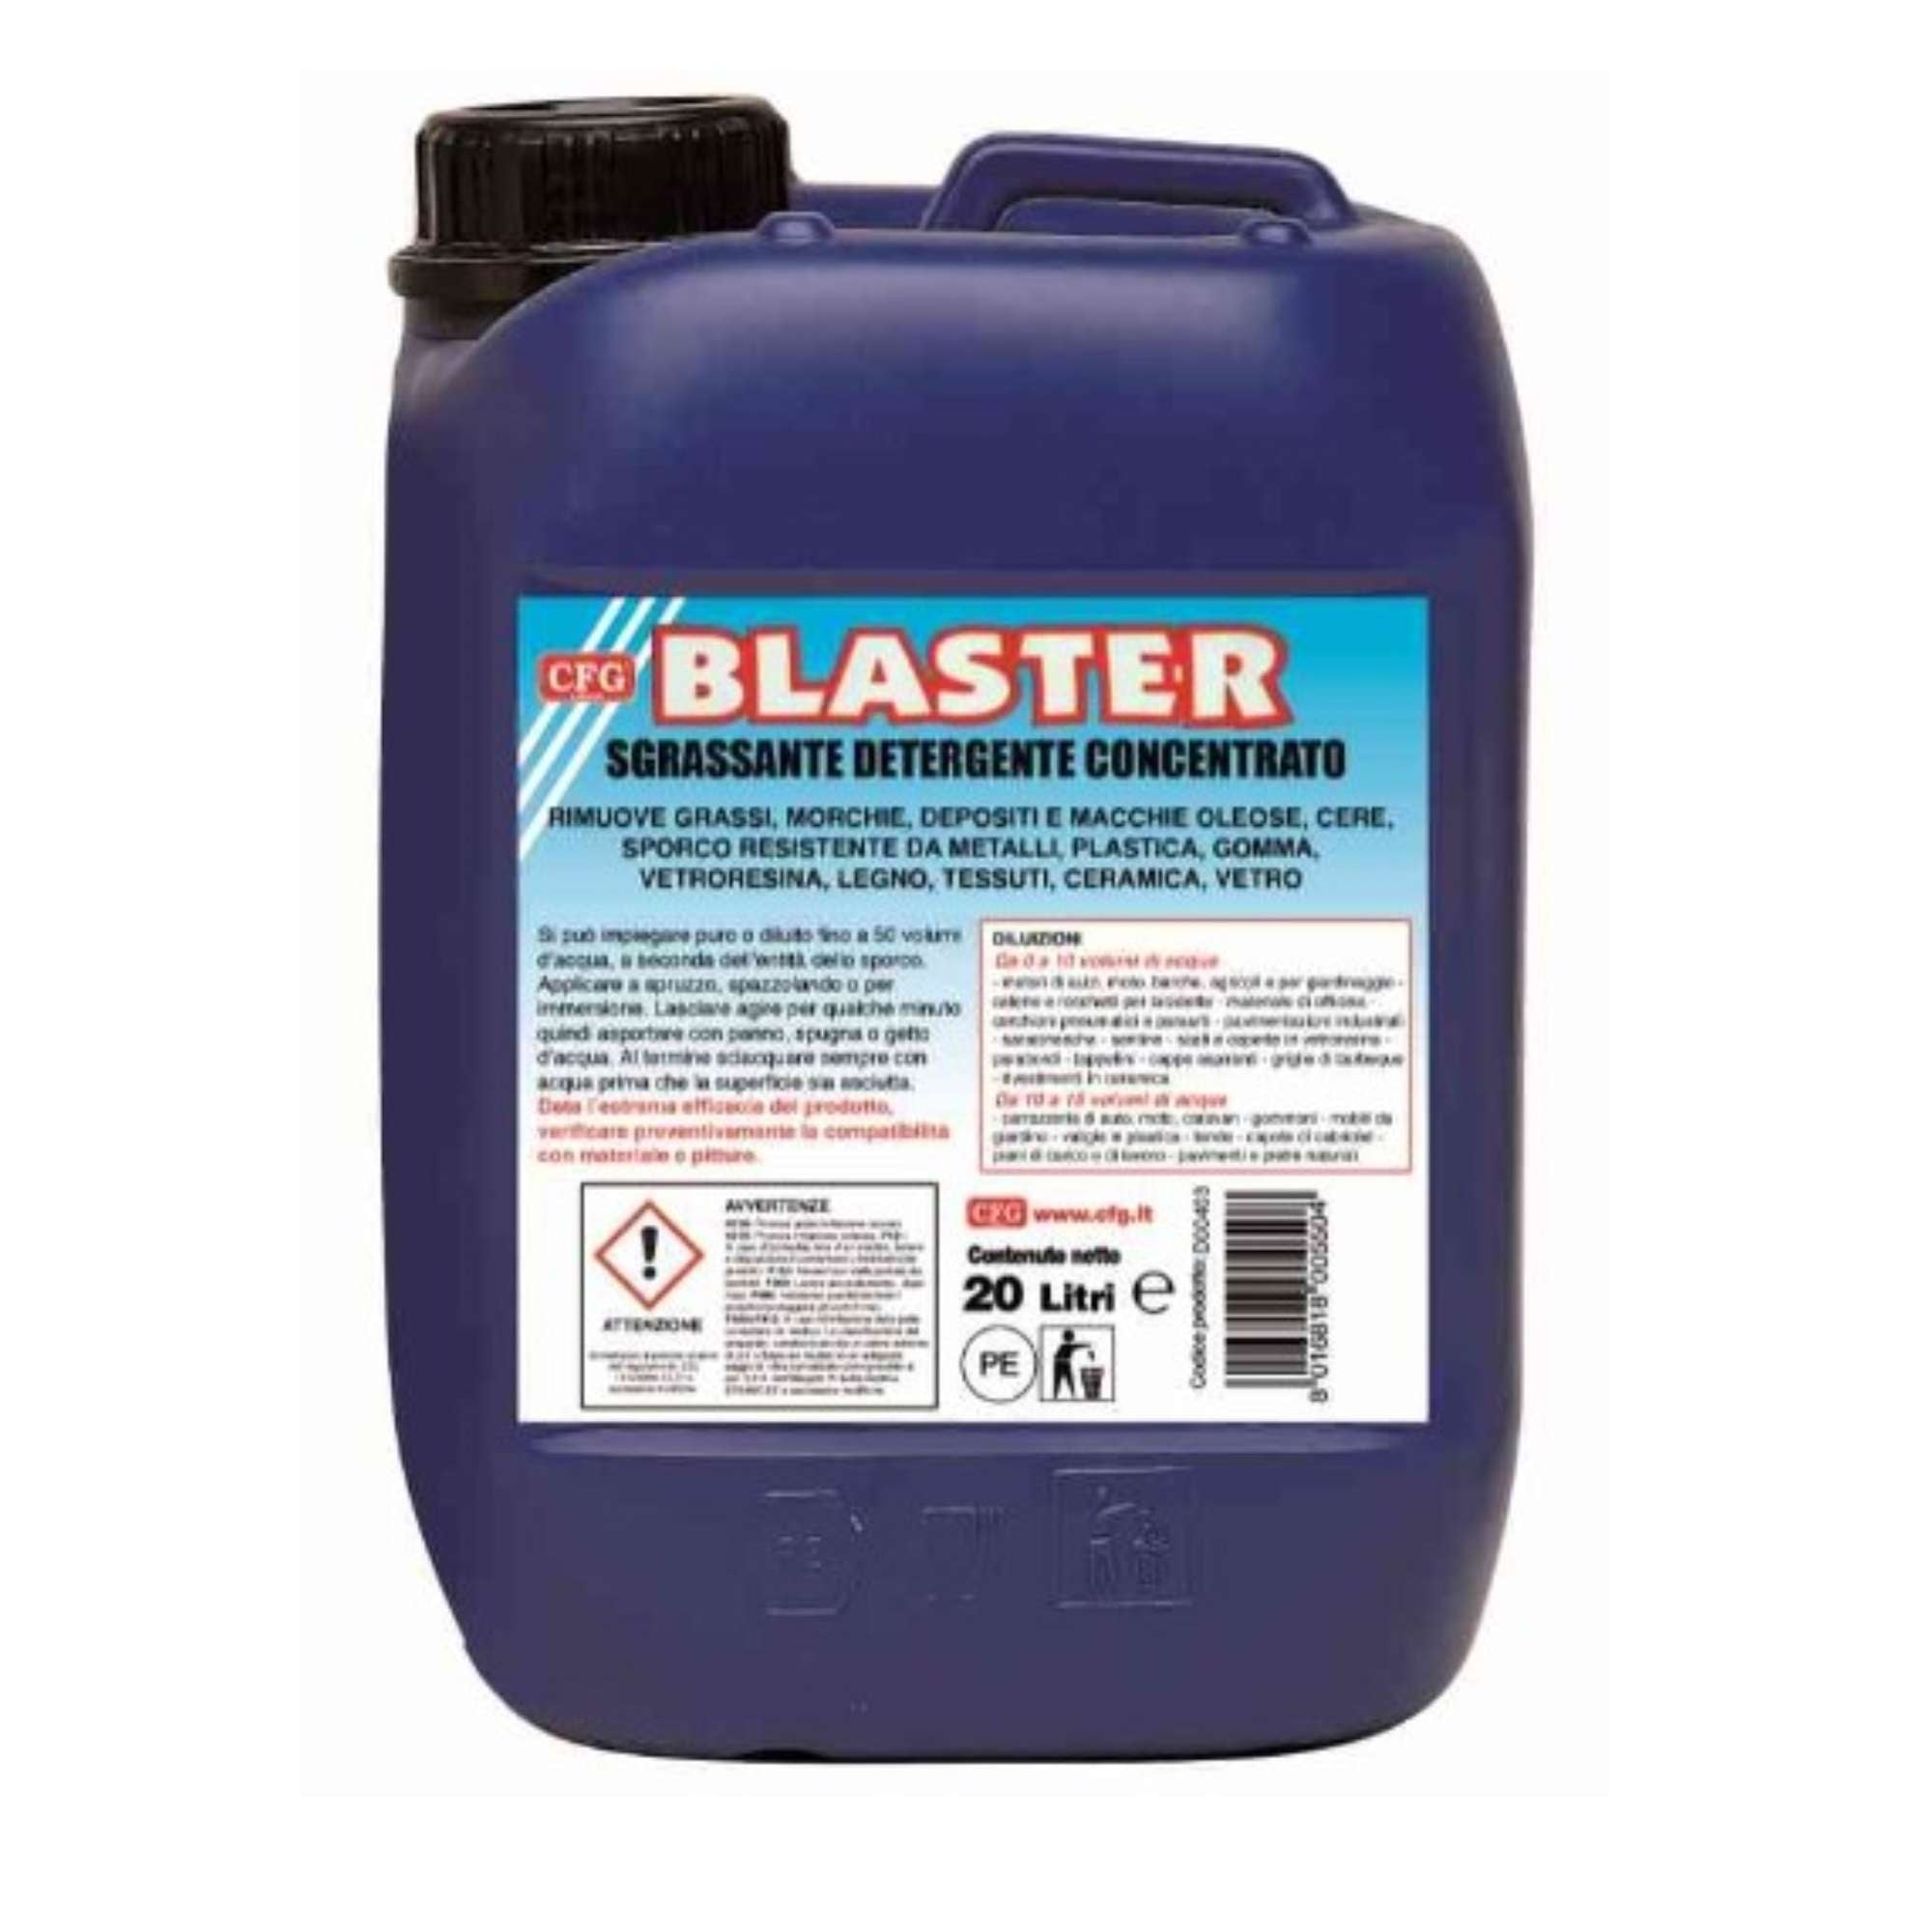 Detergente Blaster 20Lt. - CRC D00403